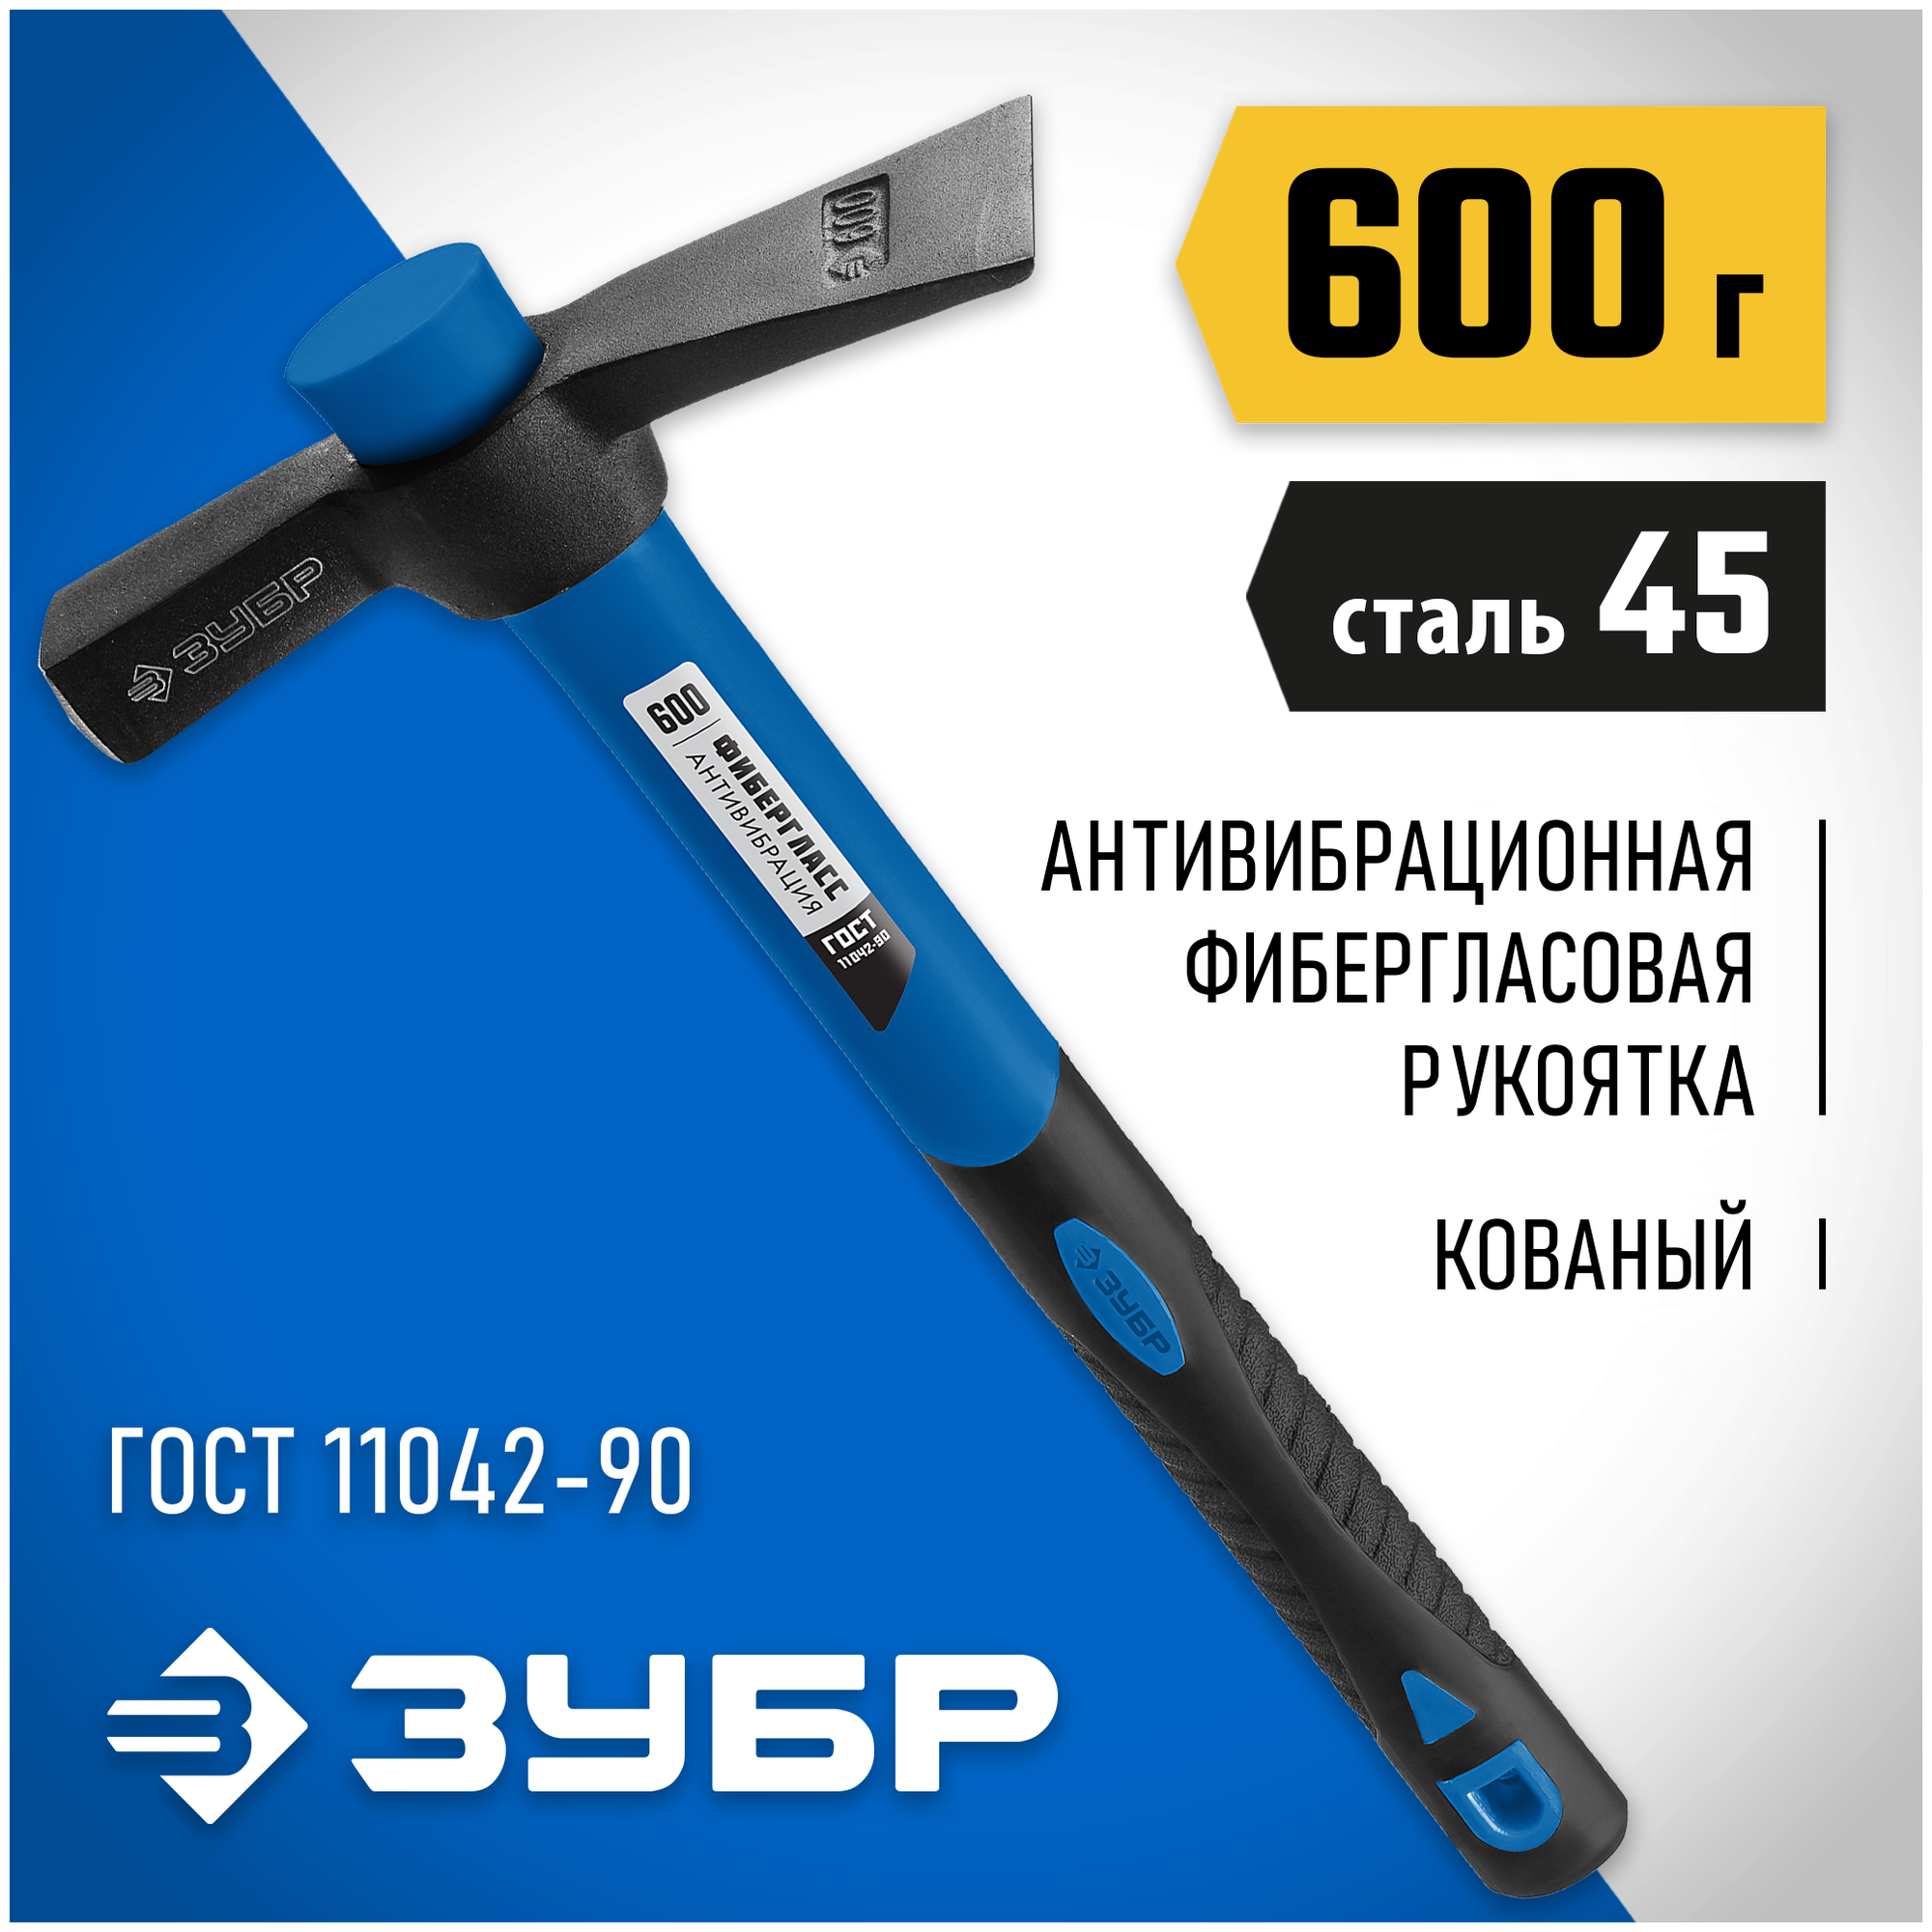 ЗУБР МК-У 600 г, Молоток каменщика, Профессионал (20155-600)